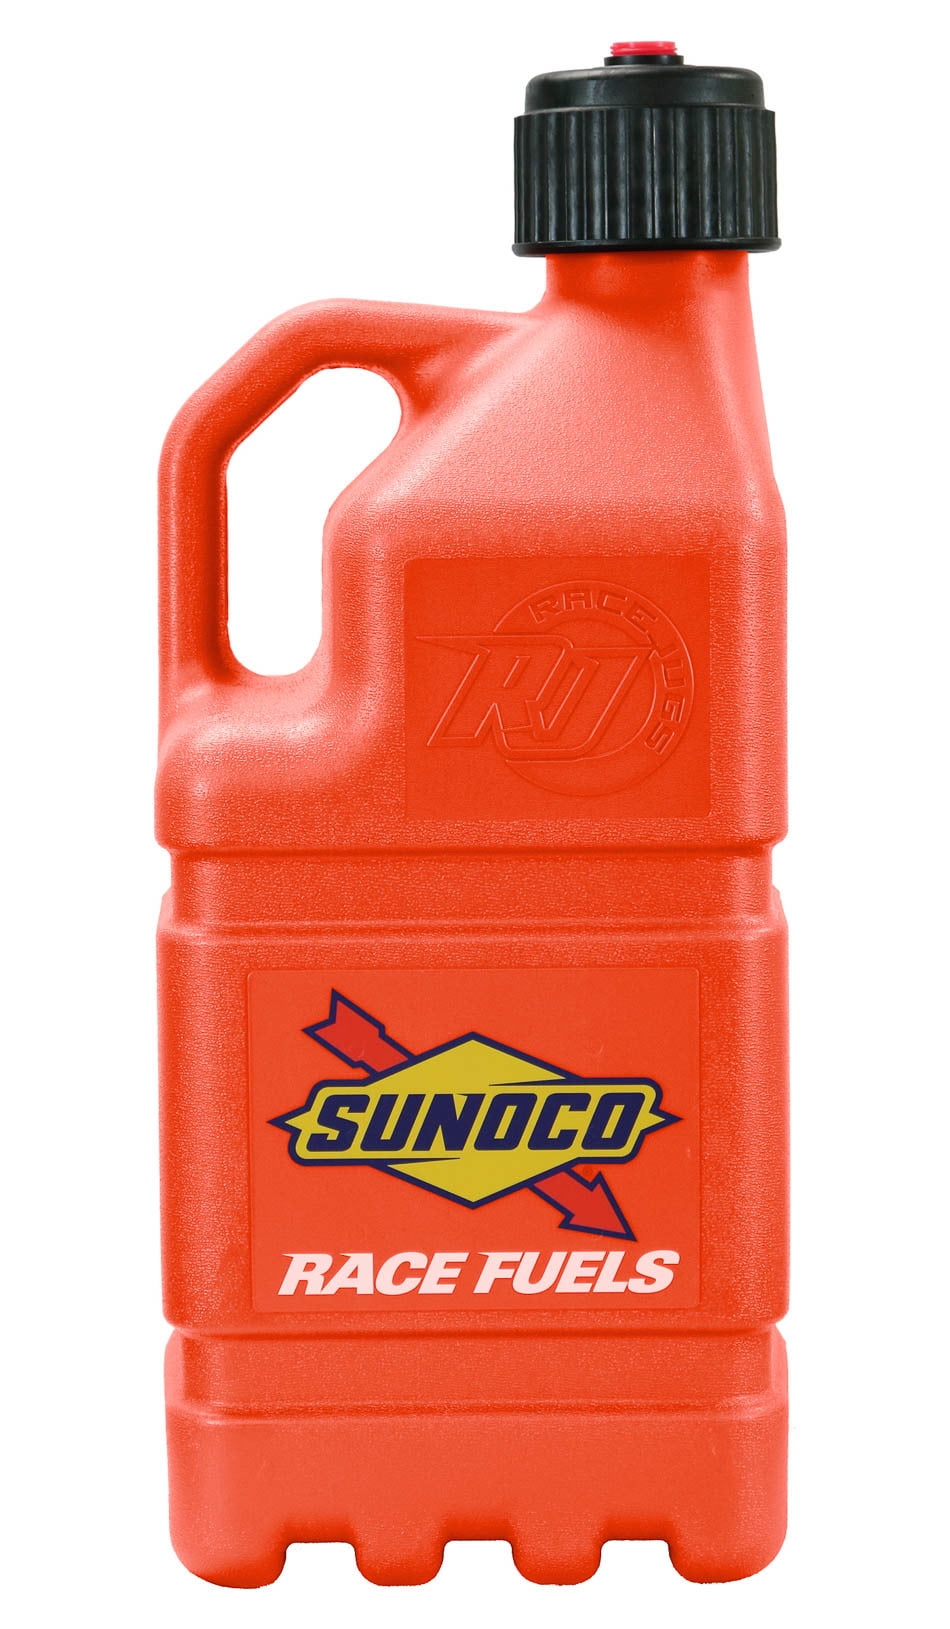 Sunoco Race Jugs 5 Gallon Racing Utility - Orange - Made in The USA ...